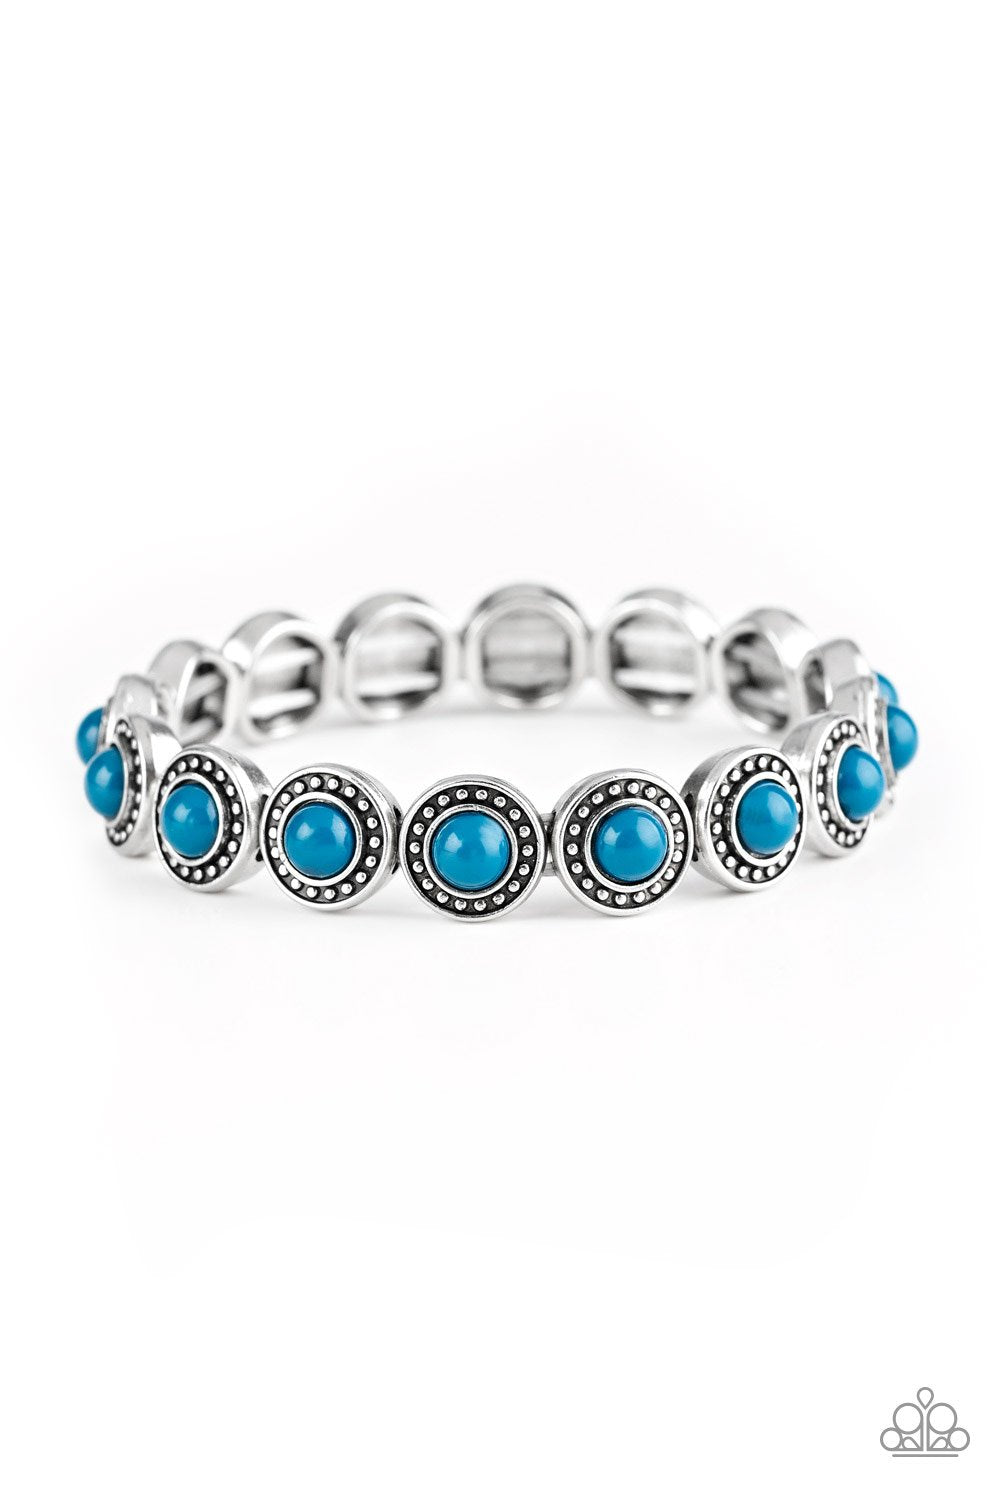 . Globetrotter Goals - Blue Bracelet